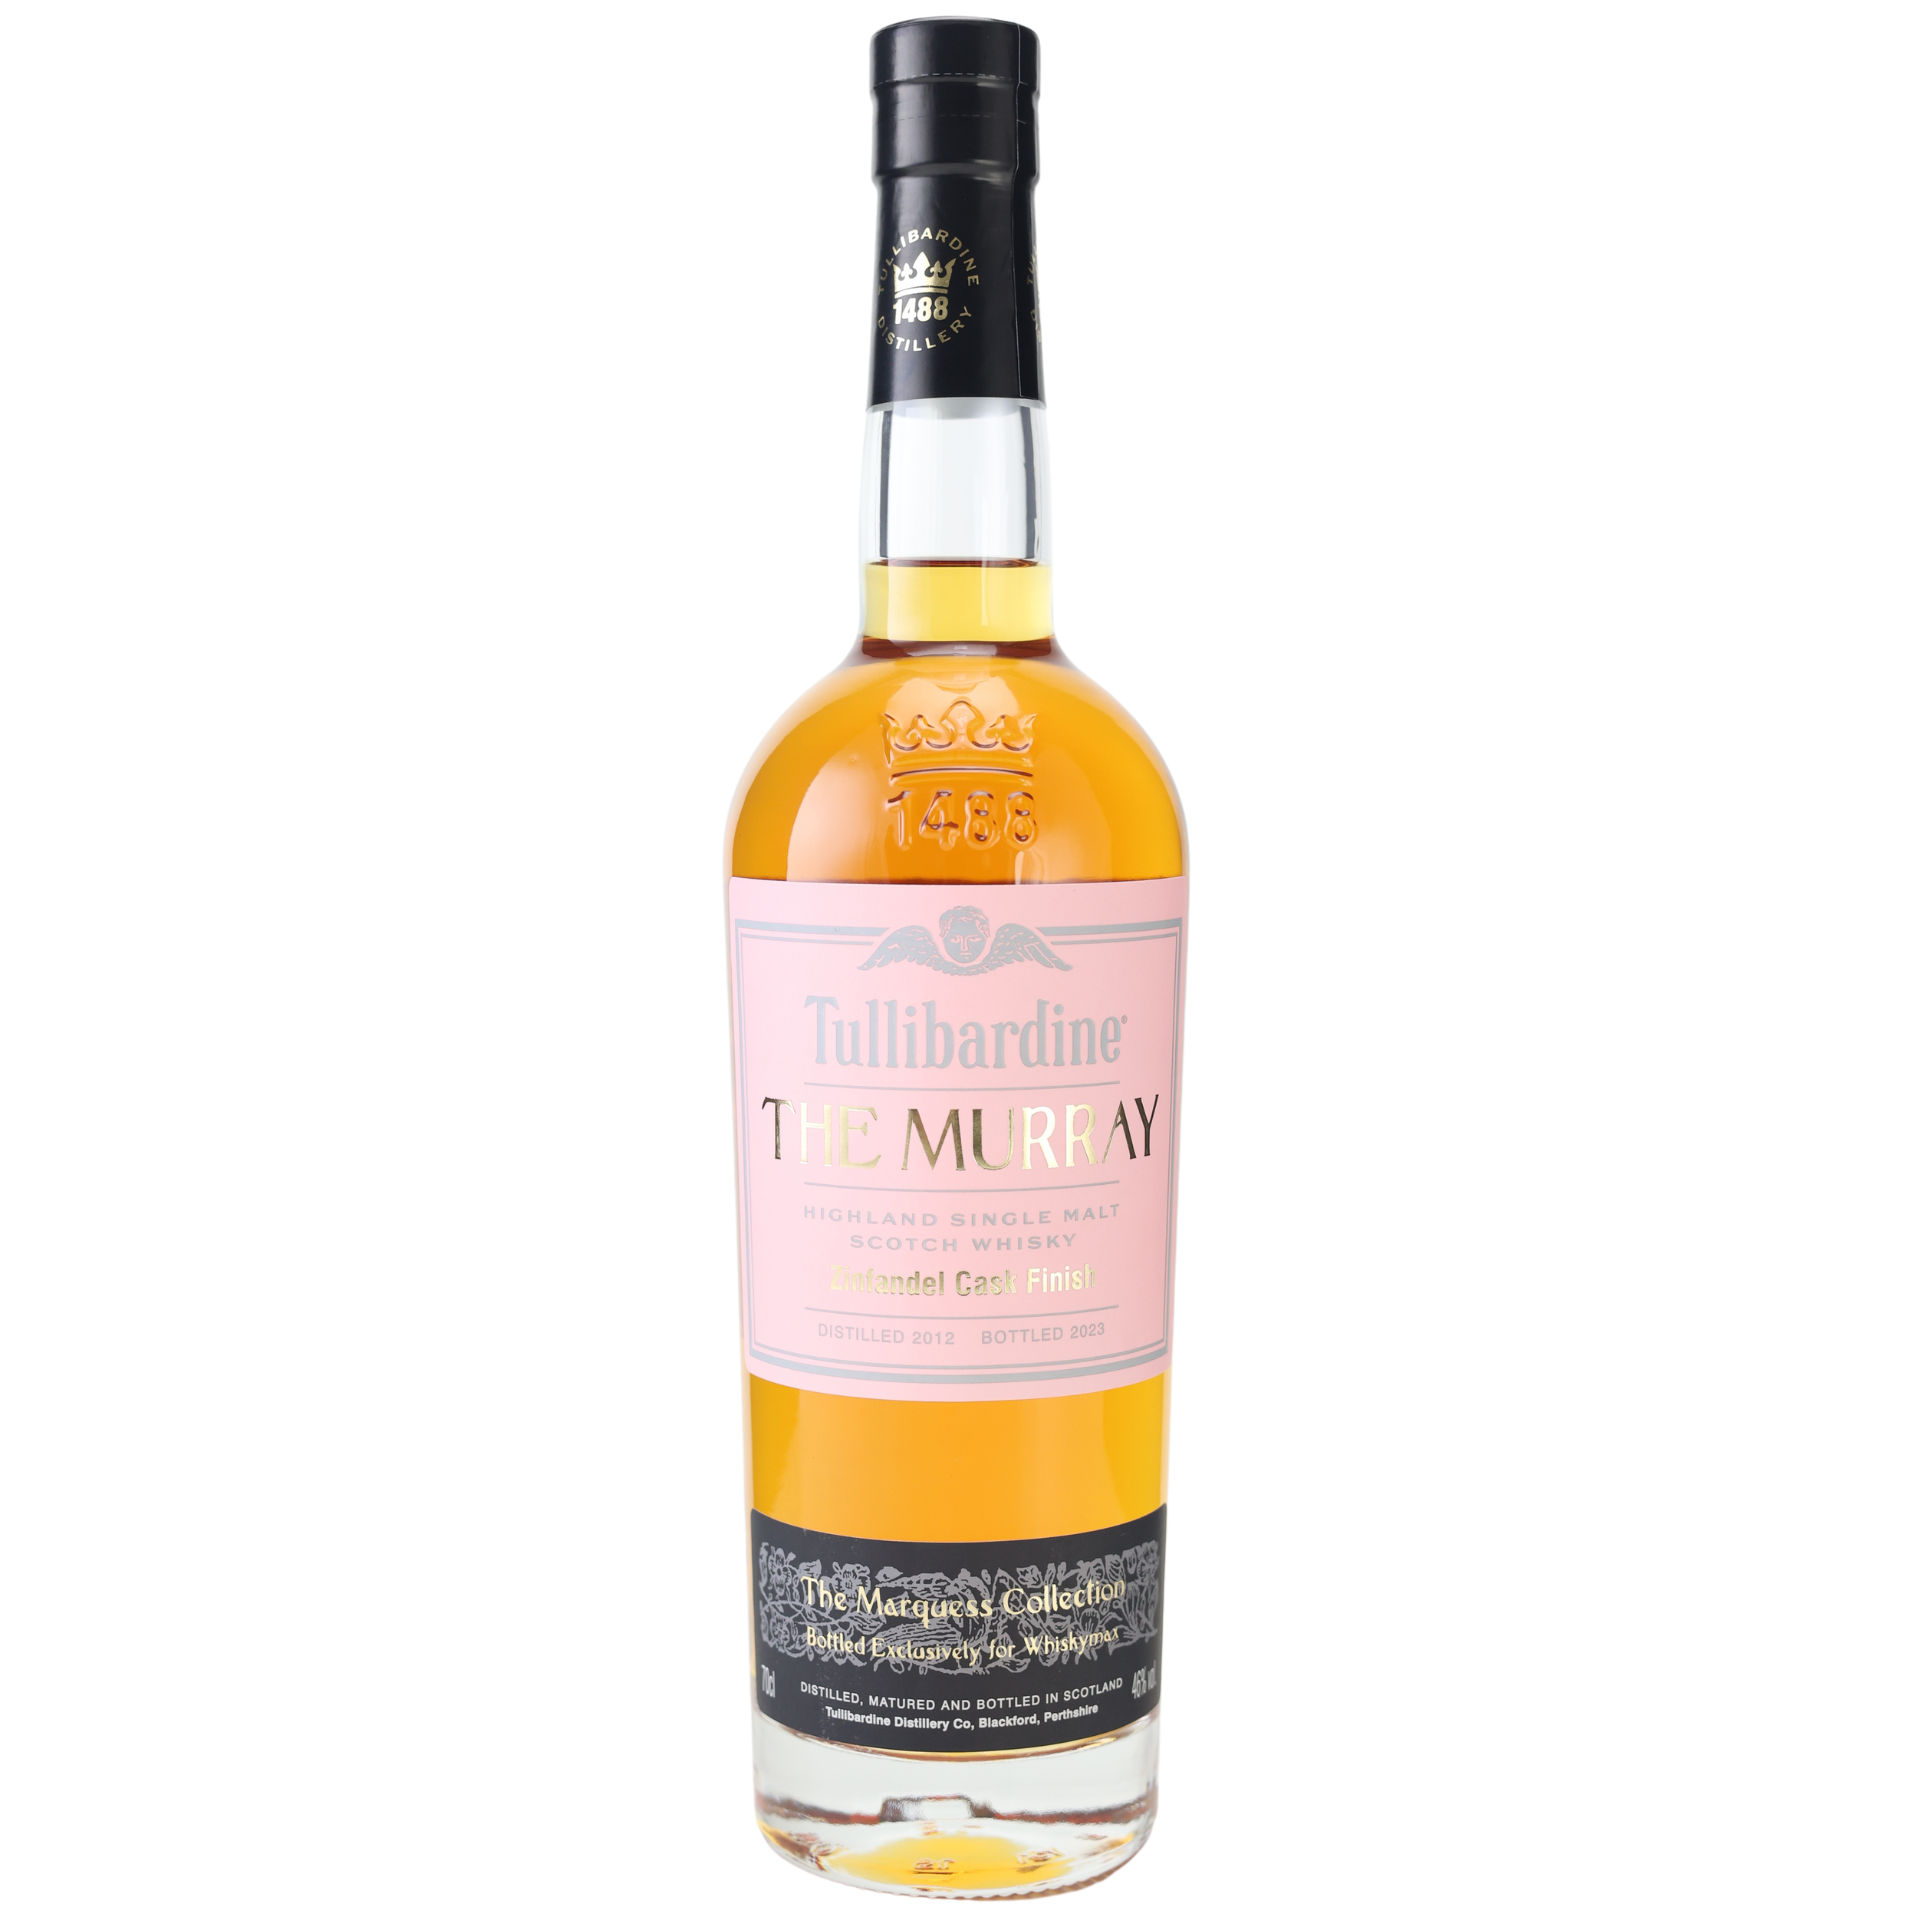 Tullibardine Zinfandel Cask Finish Highland Single Malt Scotch Whisky 46% 0,7l